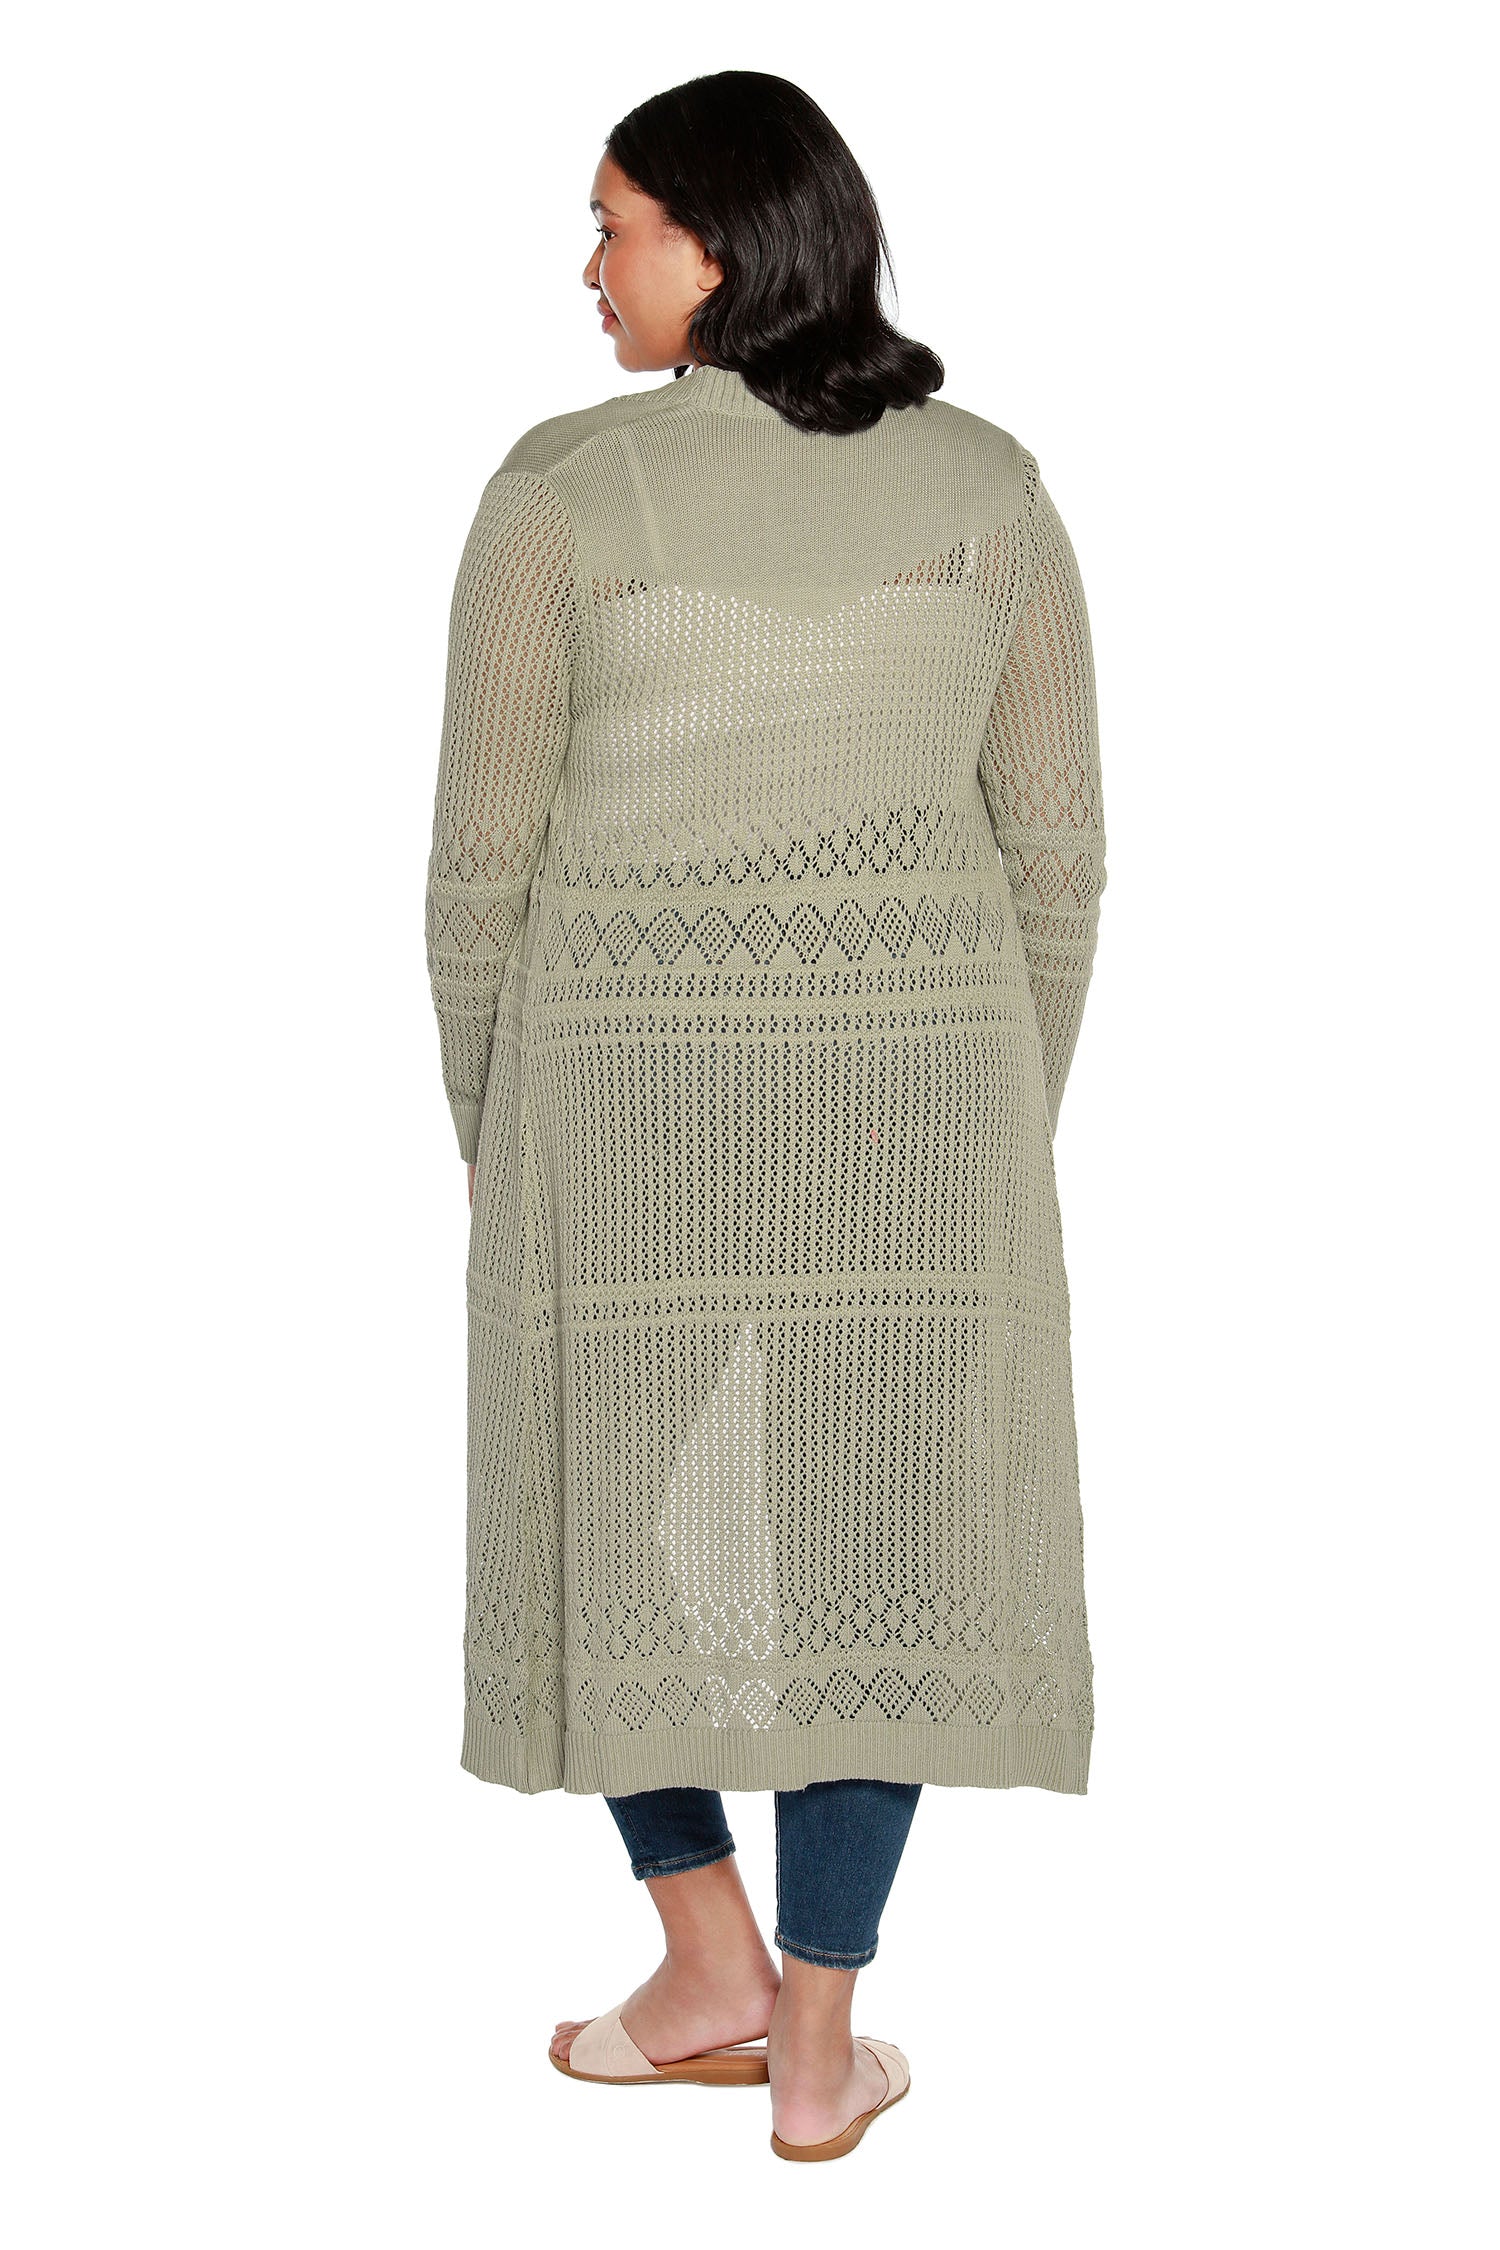 Cárdigan plumero para mujer con punto pointelle de crochet, mangas largas y frente abierto | con curvas